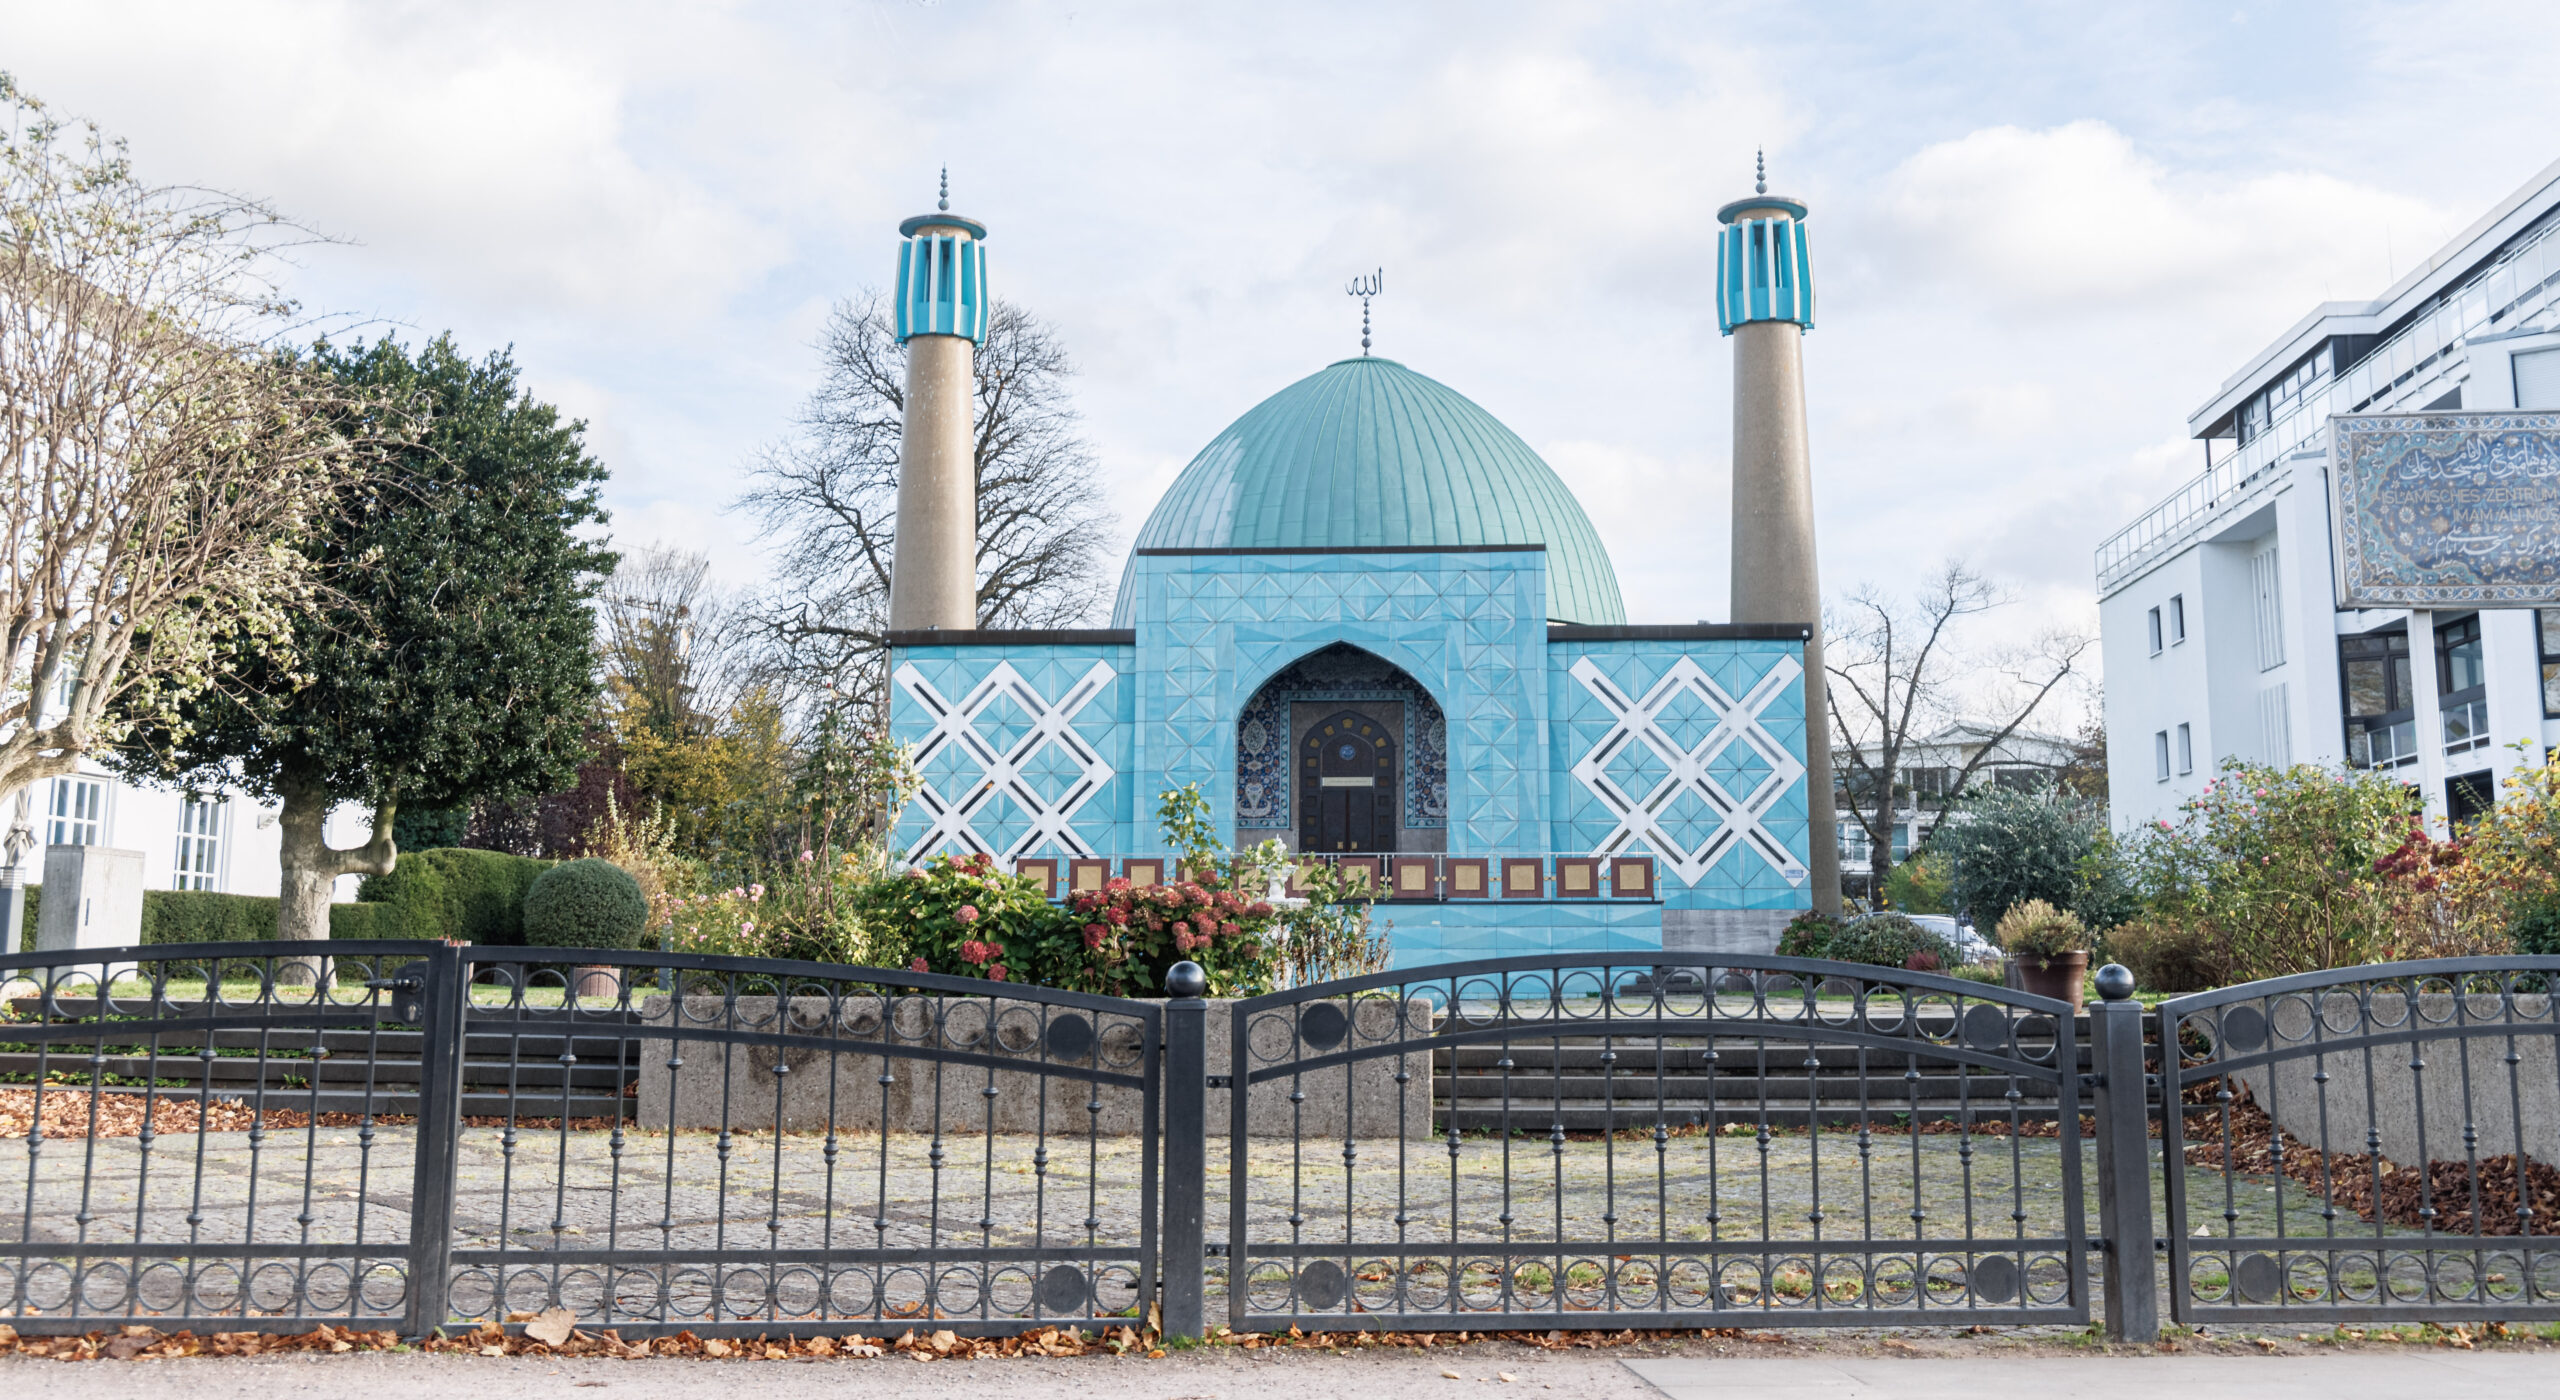 Das Islamische Zentrum Hamburg (IZH) der Imam-Ali-Moschee, auch Blaue Moschee genannt, ist aus dem Rat der Islamischen Gemeinschaften in Hamburg (Schura) ausgetreten.